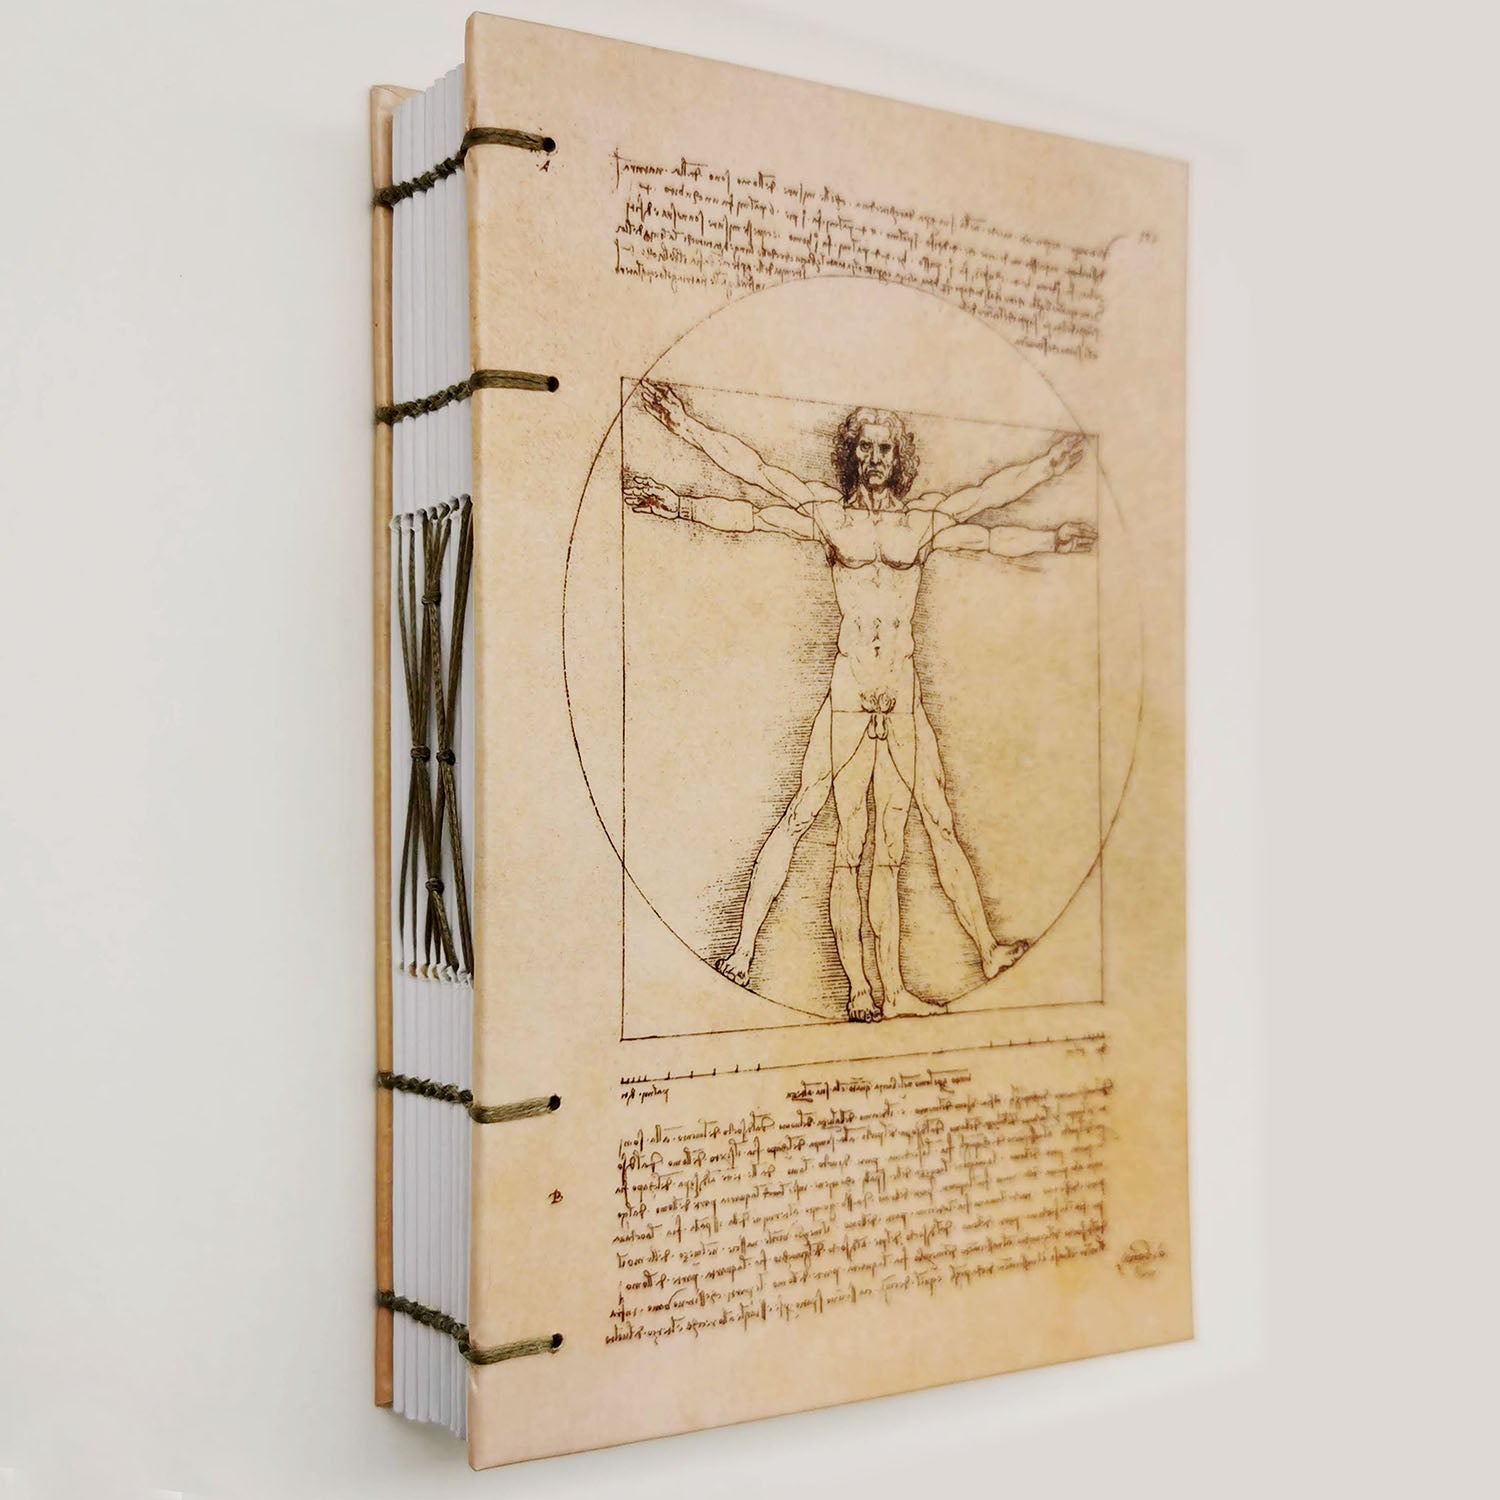 Χειροποίητo Σημειωματάριo με Βυζαντινή Βιβλιοδεσία - Leonardo da Vinci's Vitruvian Man